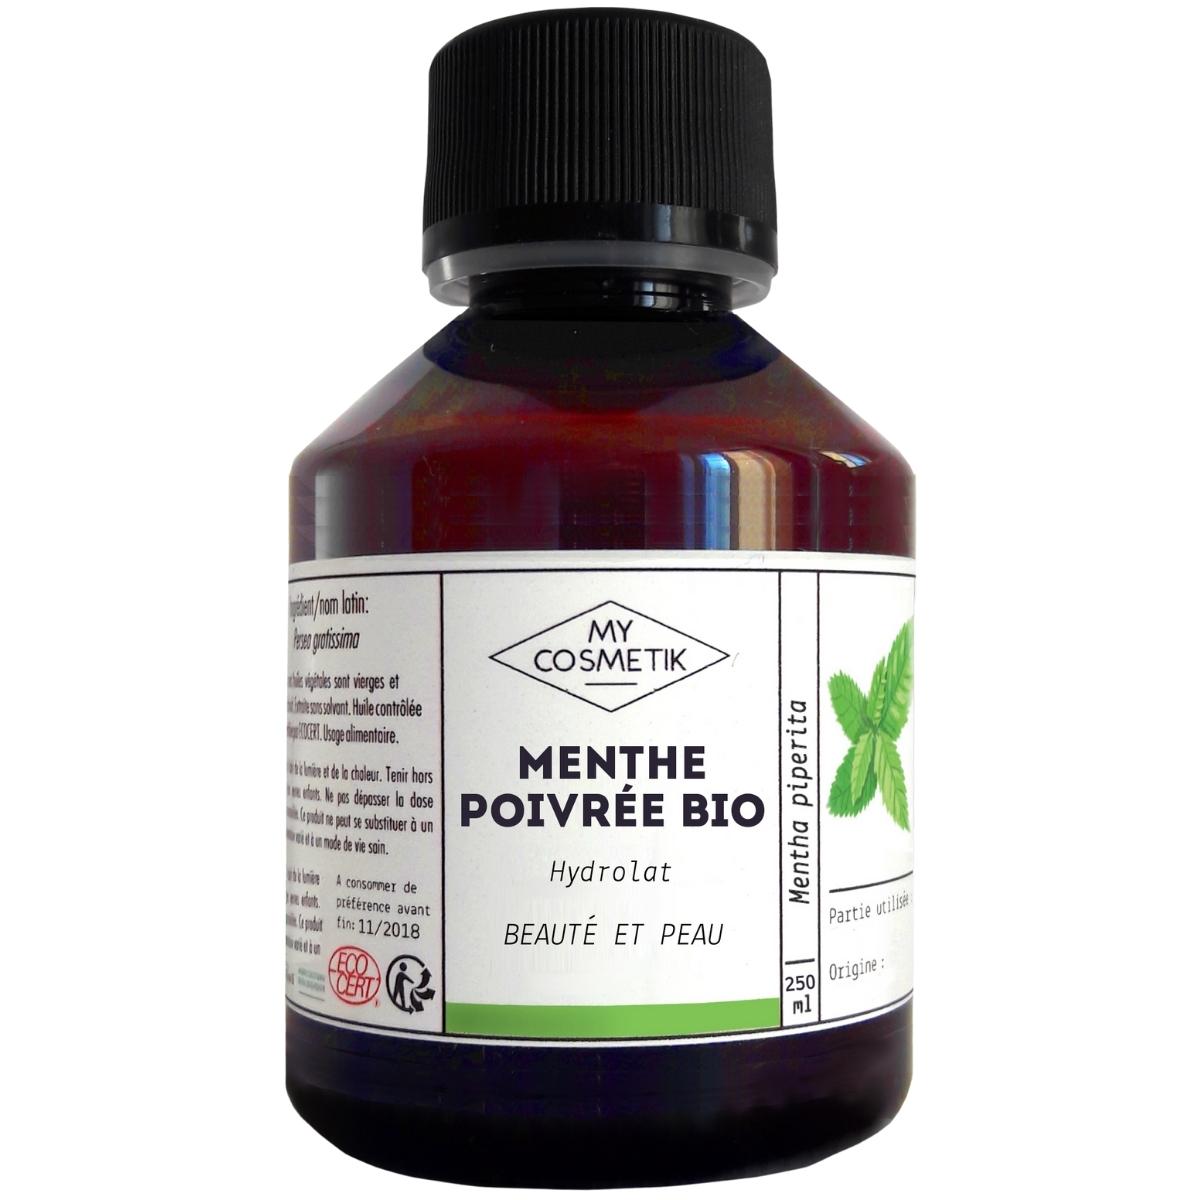 Hydrolat de menthe poivrée - 100 ml